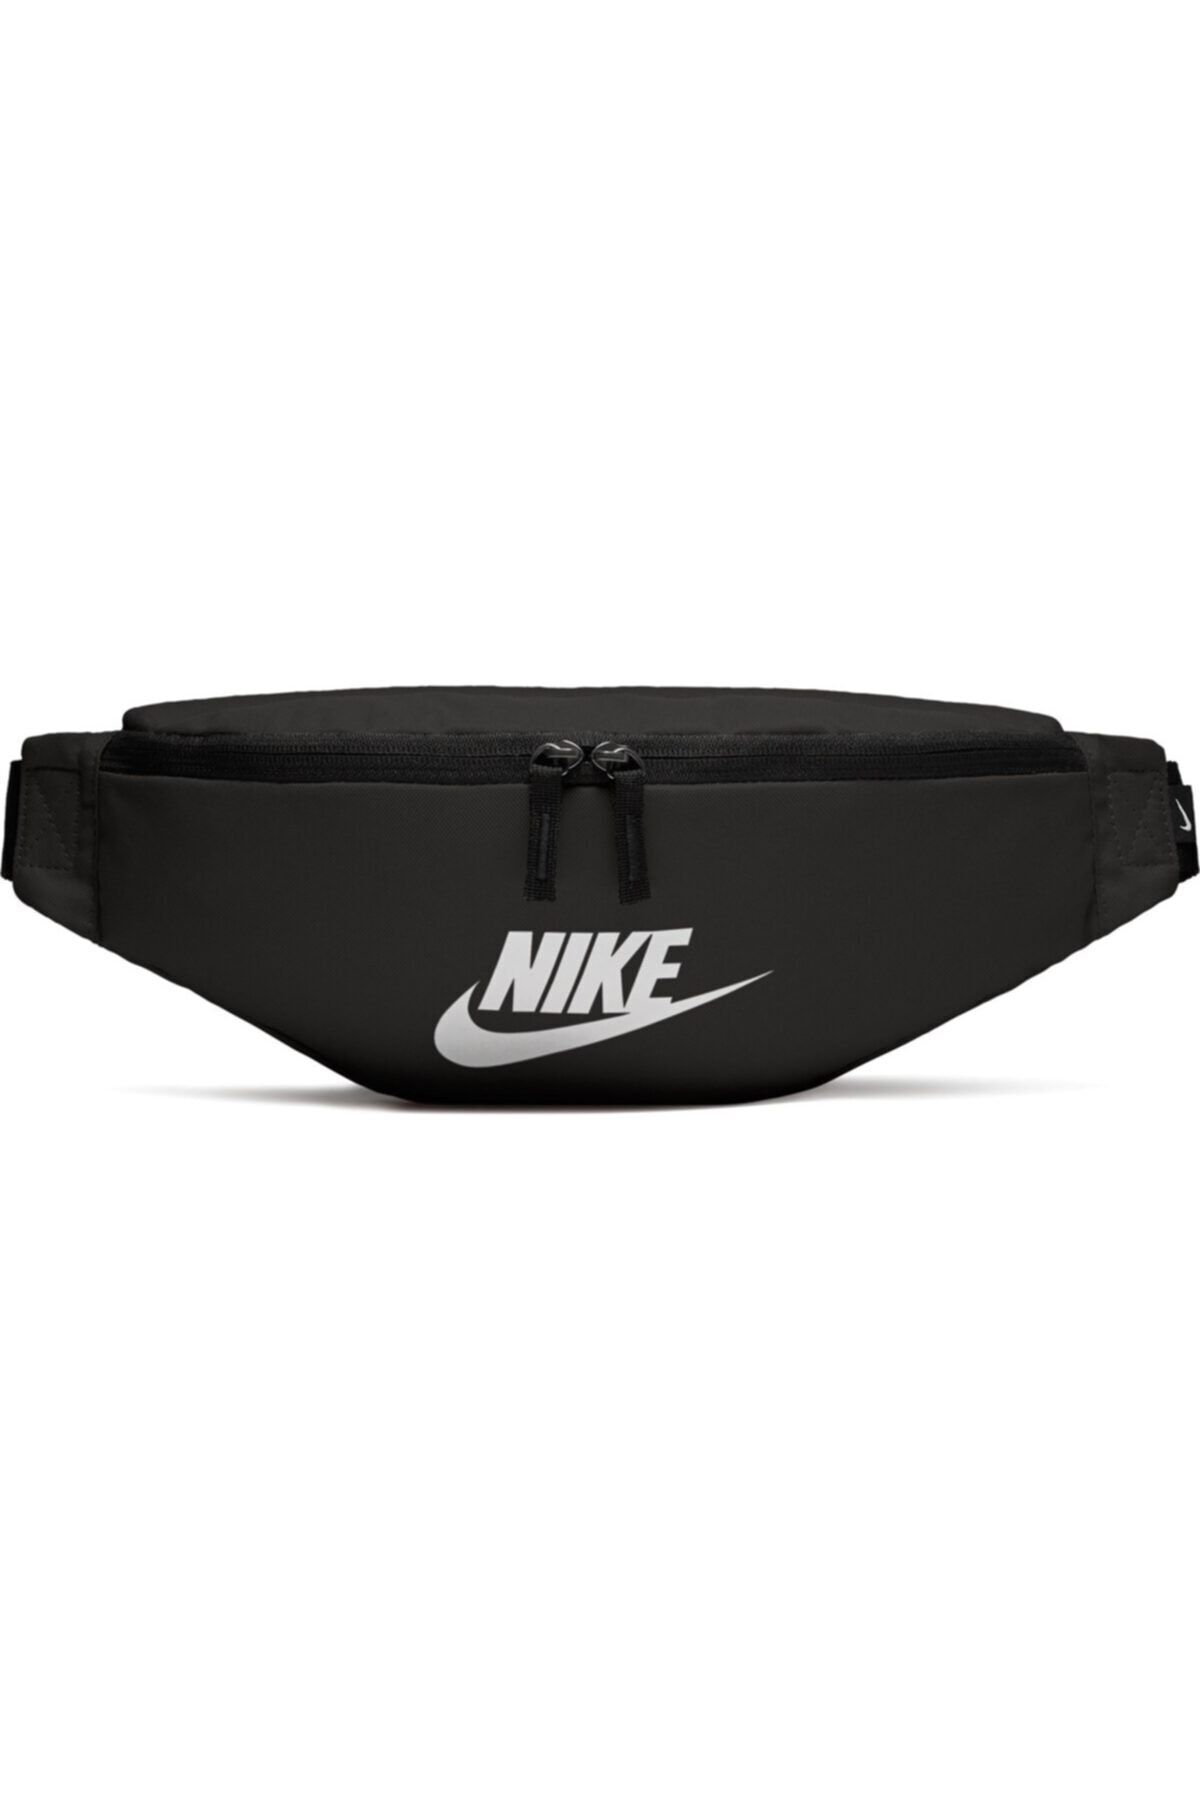 Nike Unisex Siyah Bel Çantası Ba5750-010